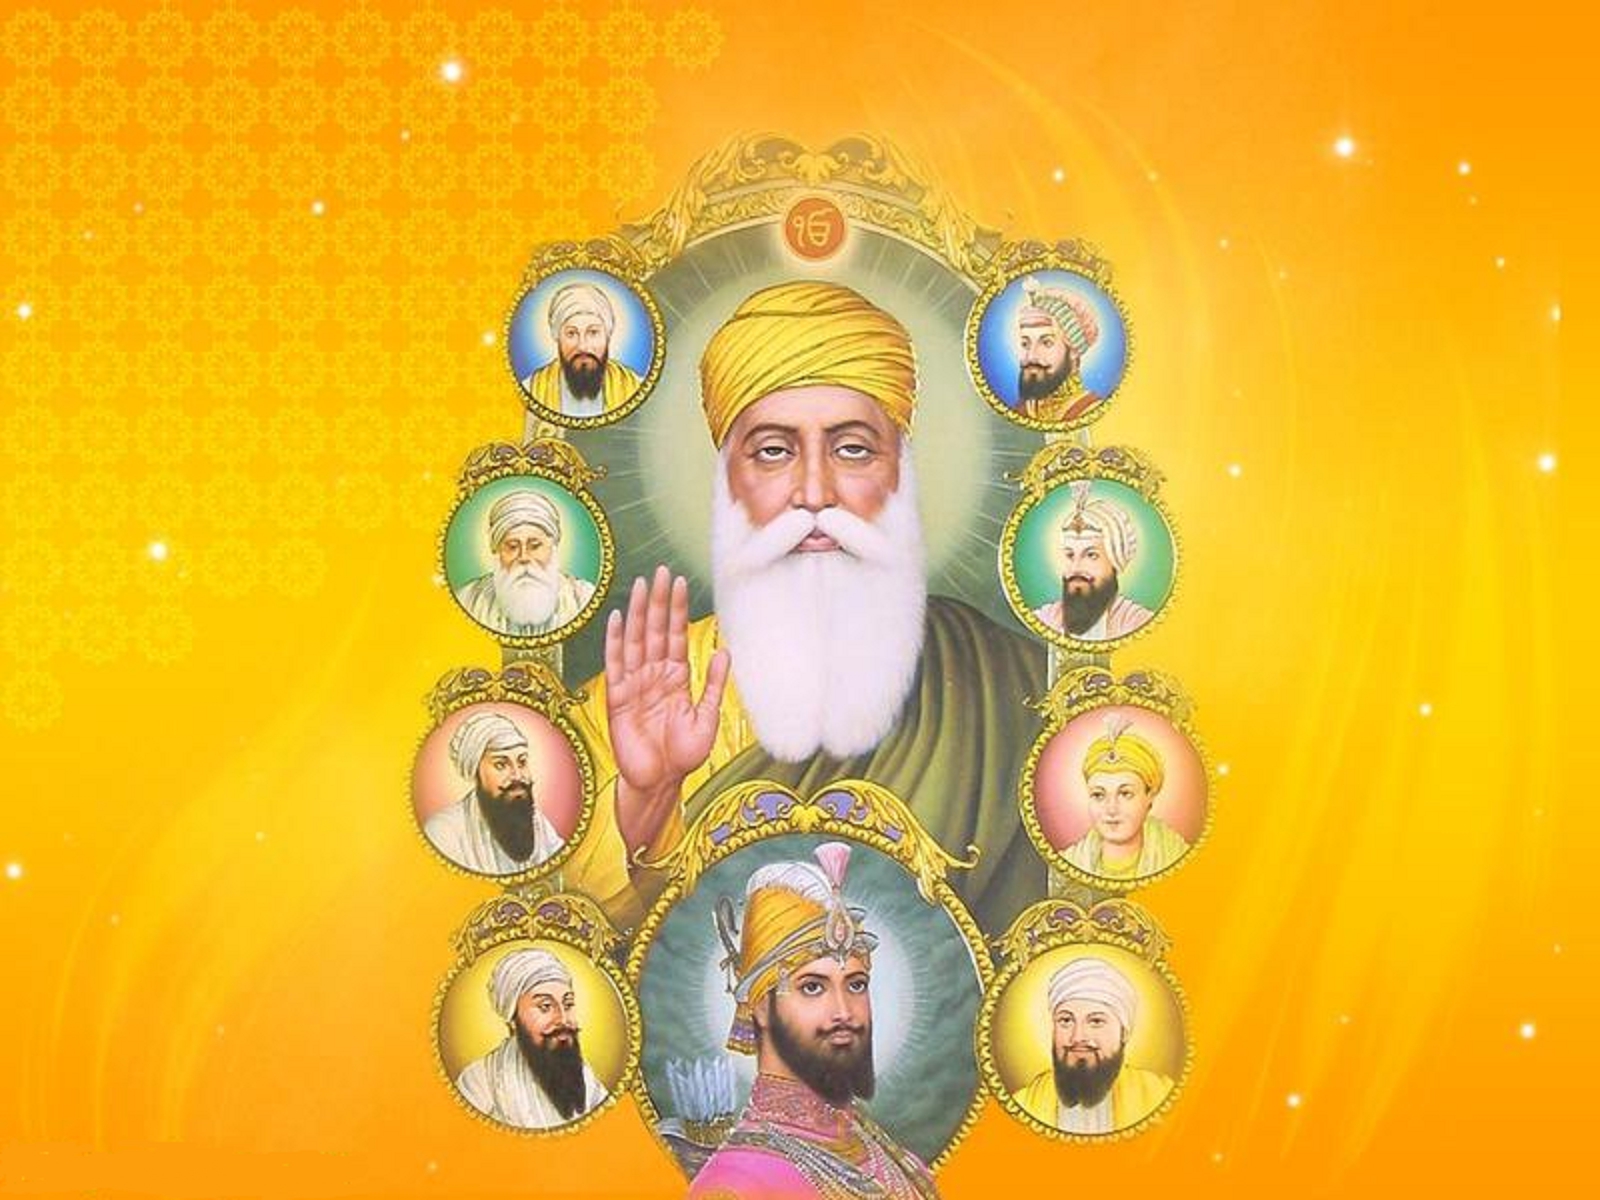 Wallpaper Sikh Guru - WallpaperSafari